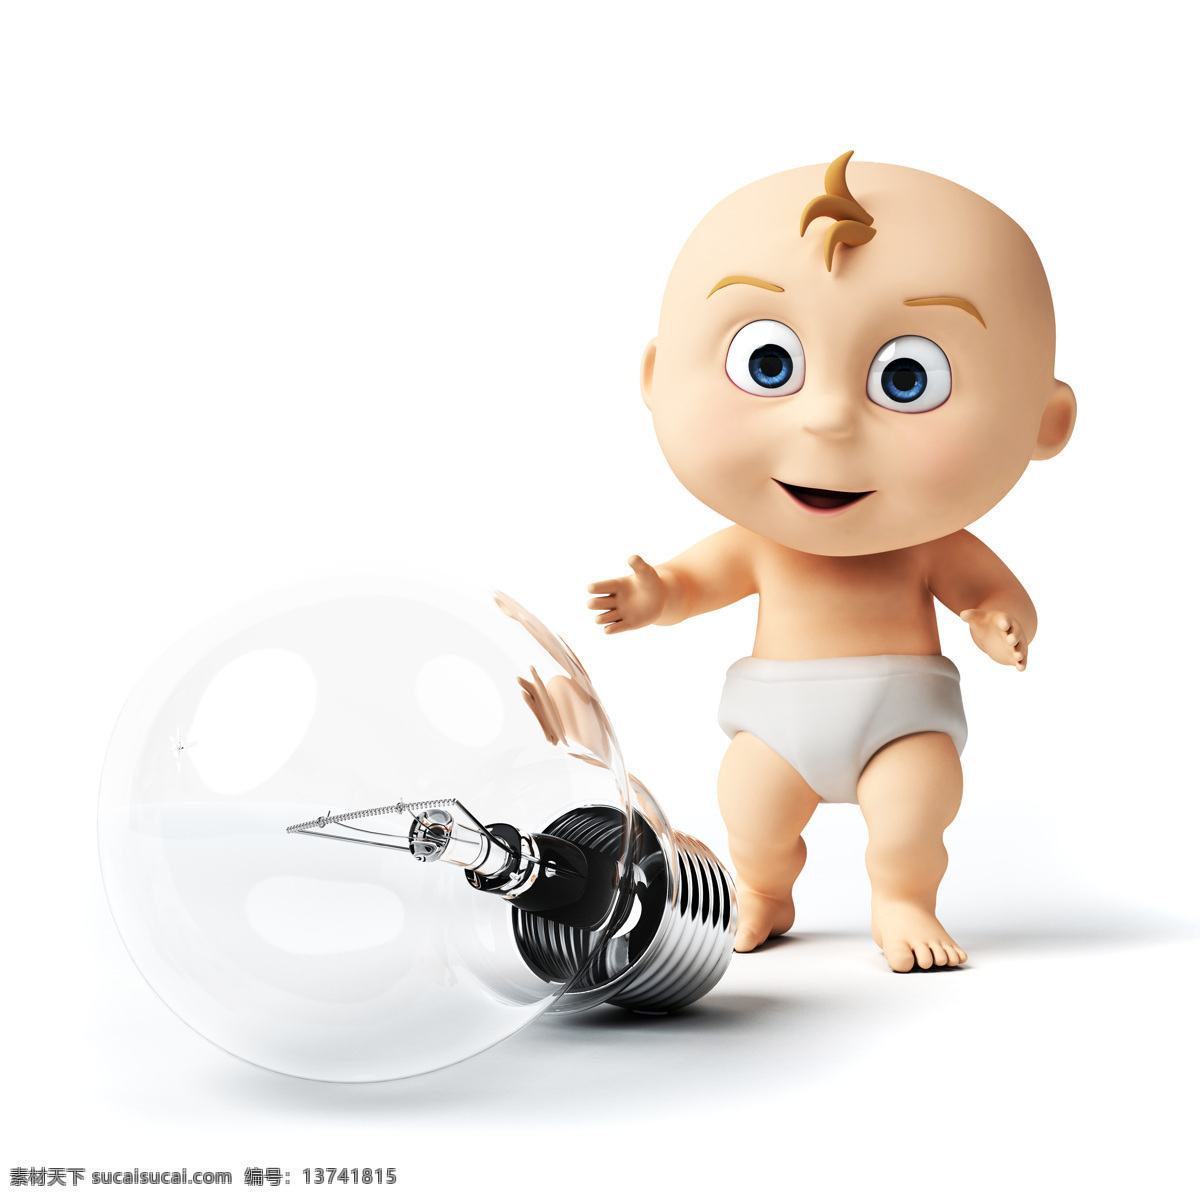 灯泡 婴儿 孩子 卡通人物 其他人物 人物图片